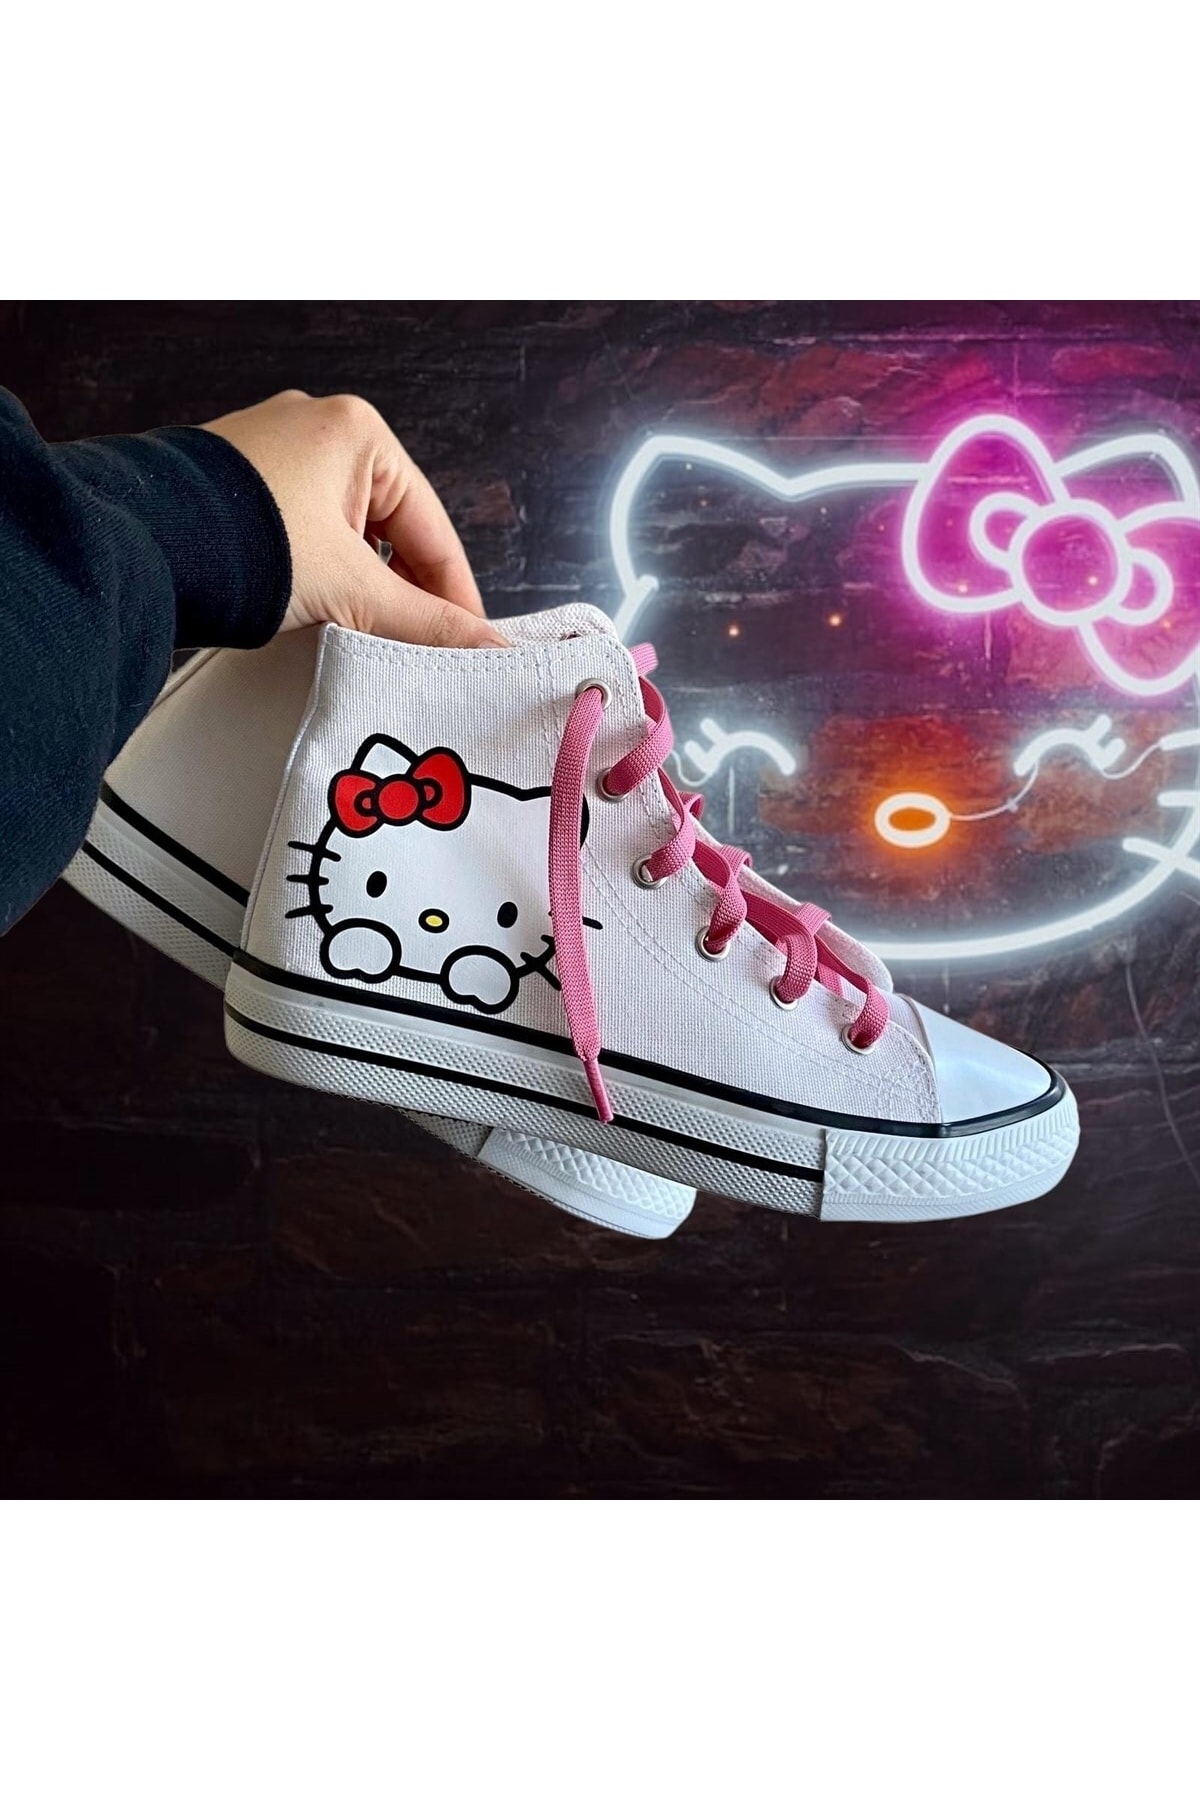 Touz Moda Dompuleri Moda Hello Kitty Baskılı Beyaz Kanvas Ayakkabı